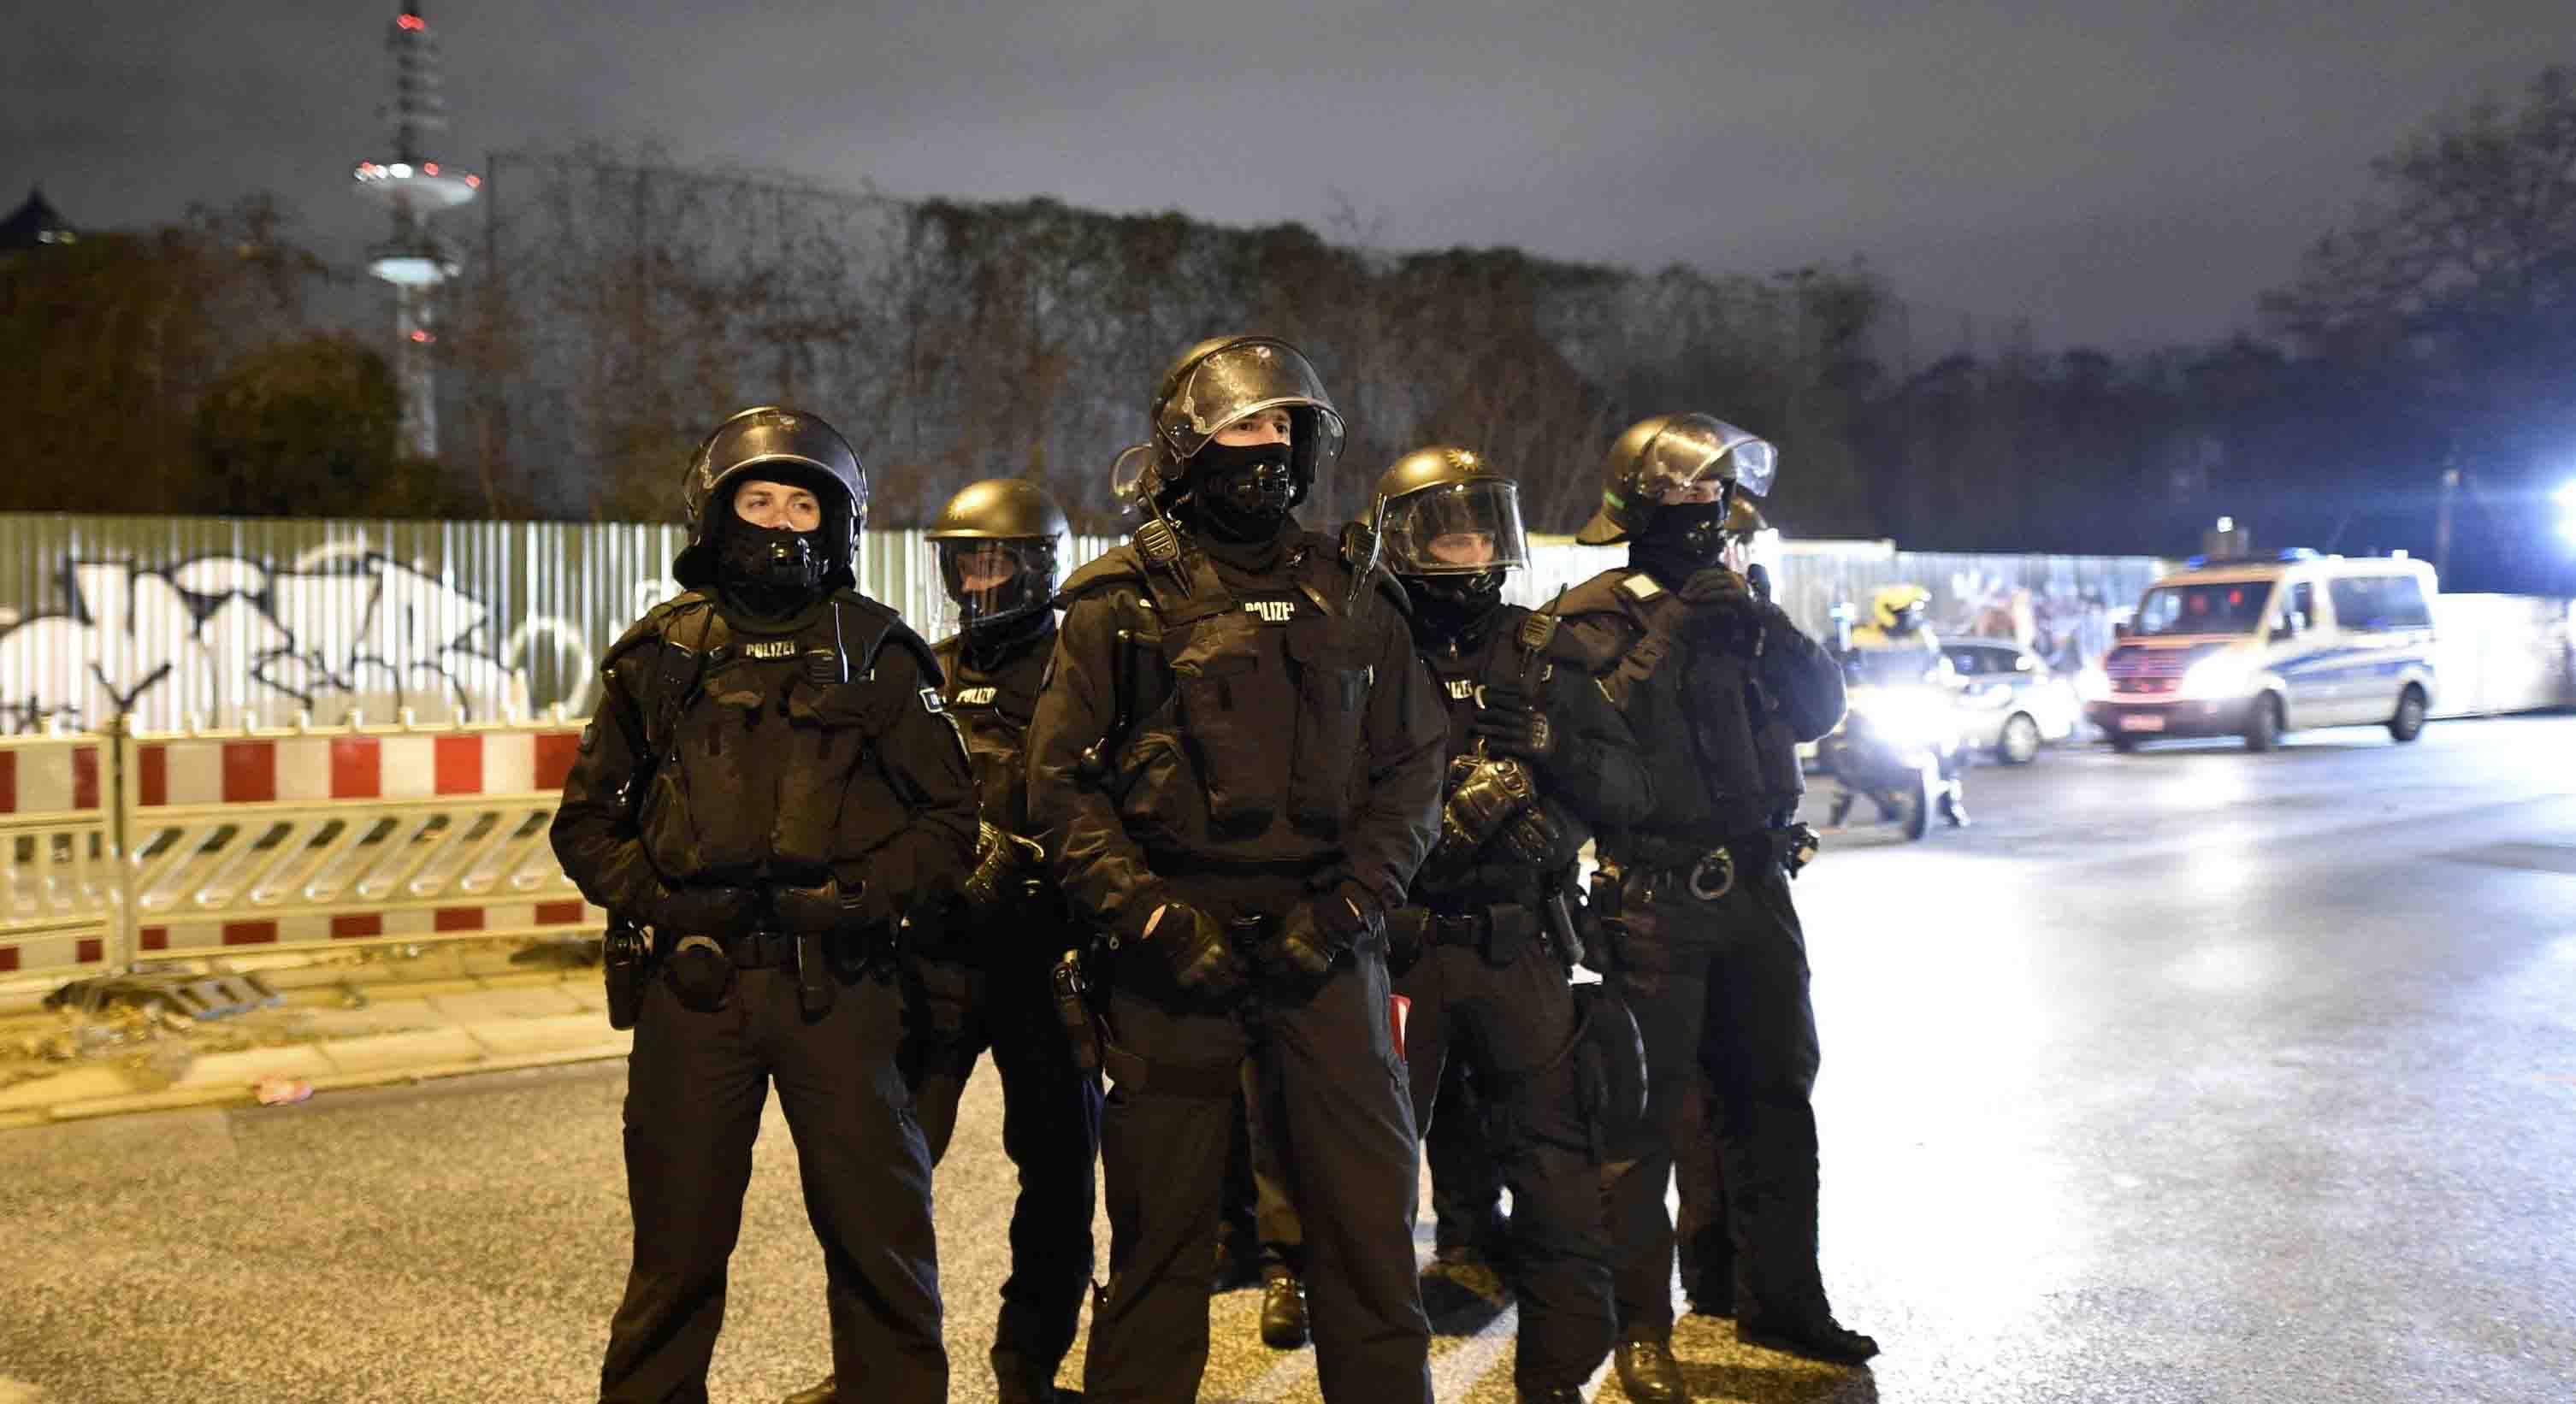 Tras los ataques ocurridos en la ciudad alemana el pasado diciembre de 2015 las autoridades estarán más alertas